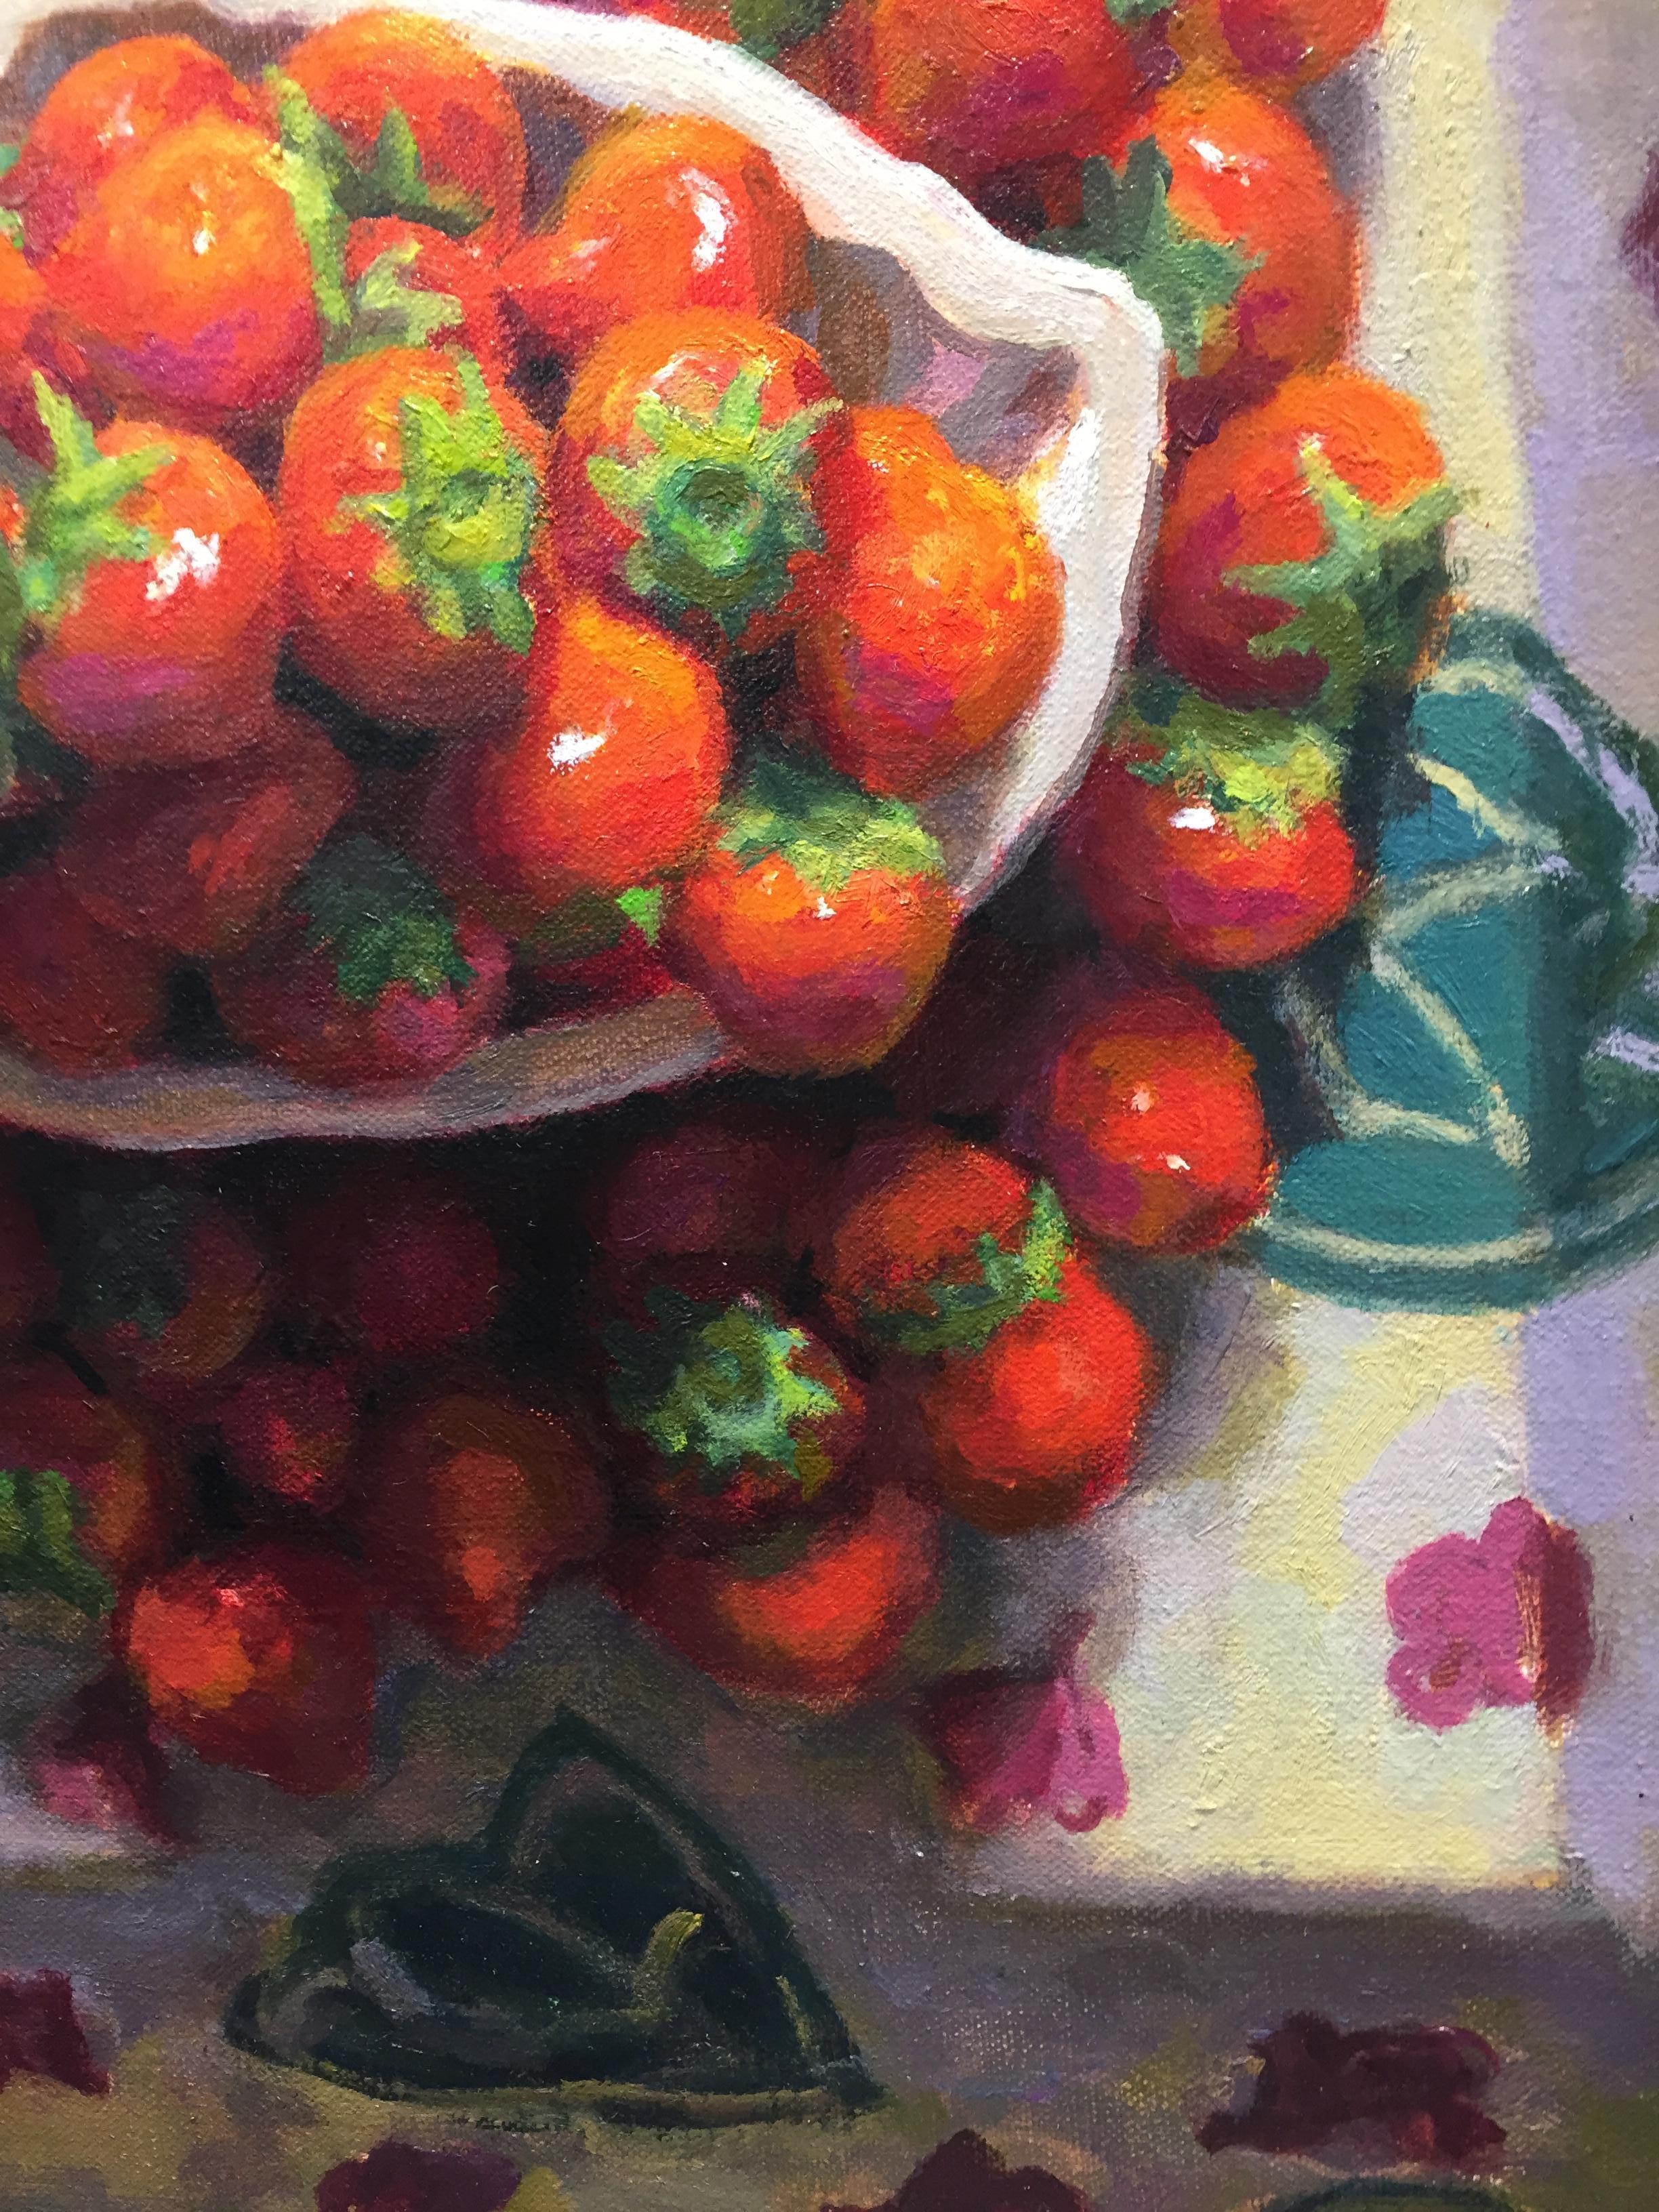 Schale mit Erdbeerbeeren – Stillleben des niederländischen Mario ter Braak aus dem 21. Jahrhundert 6